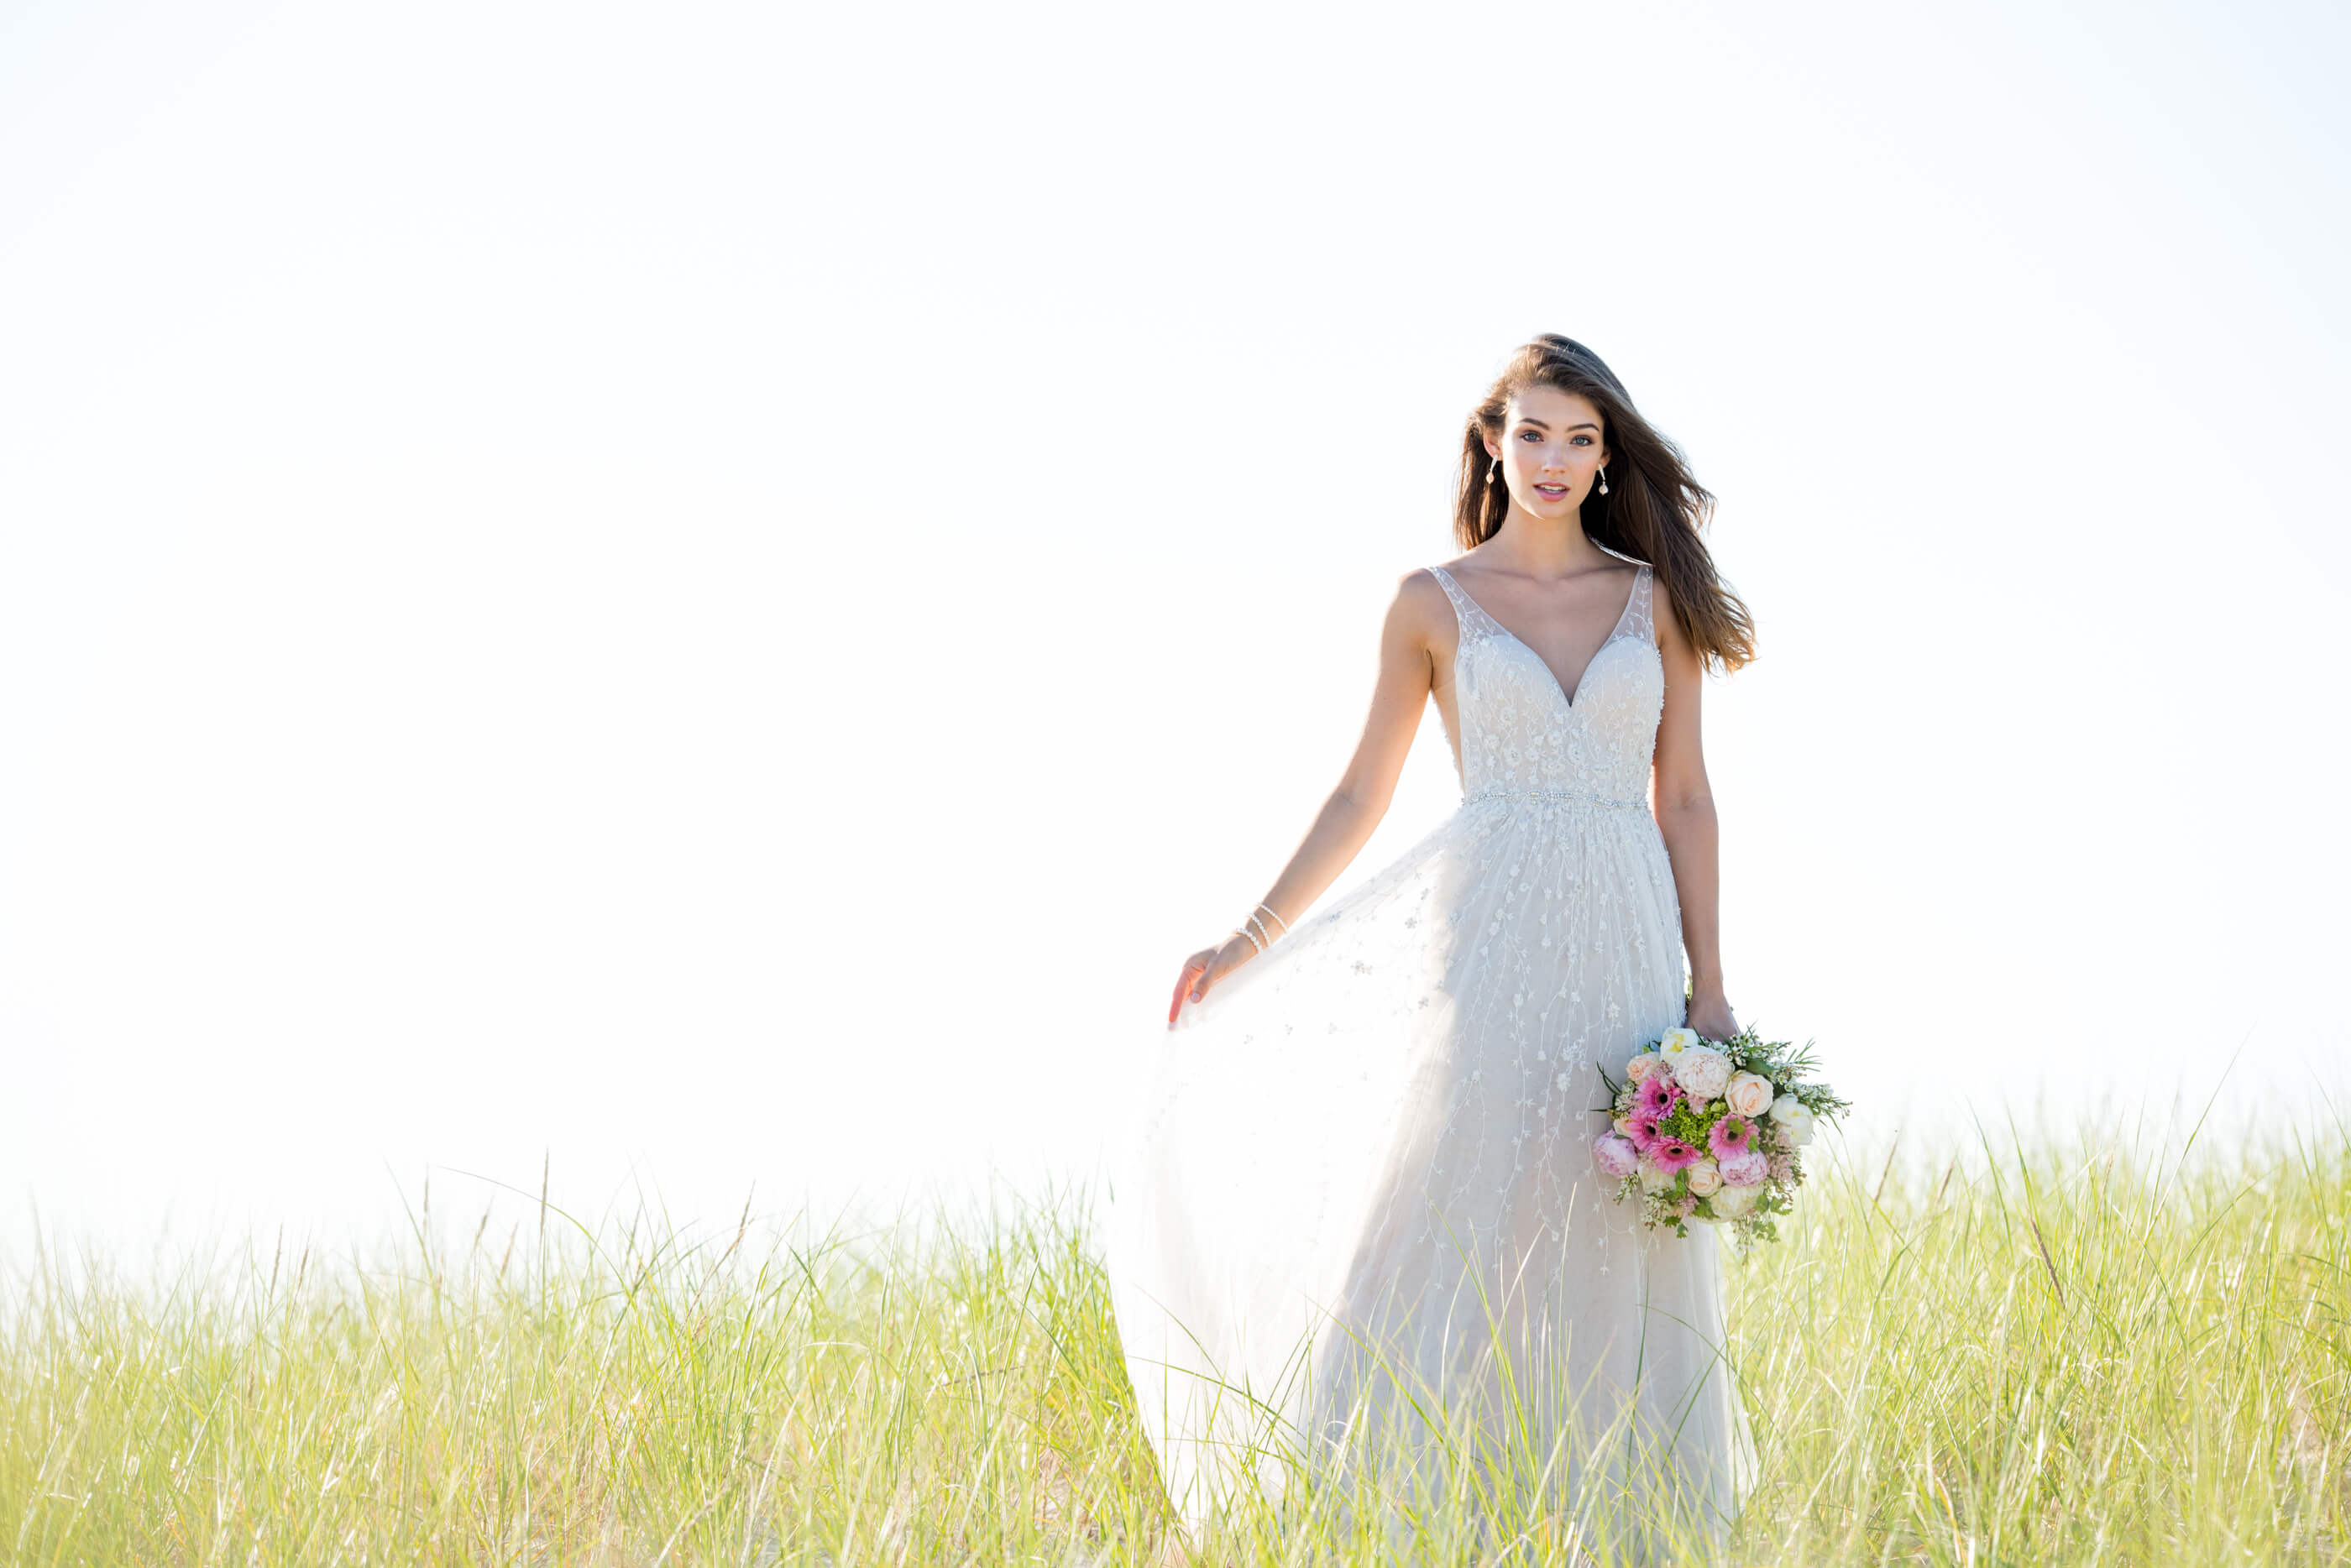 Brunette bride holding bouquet in field